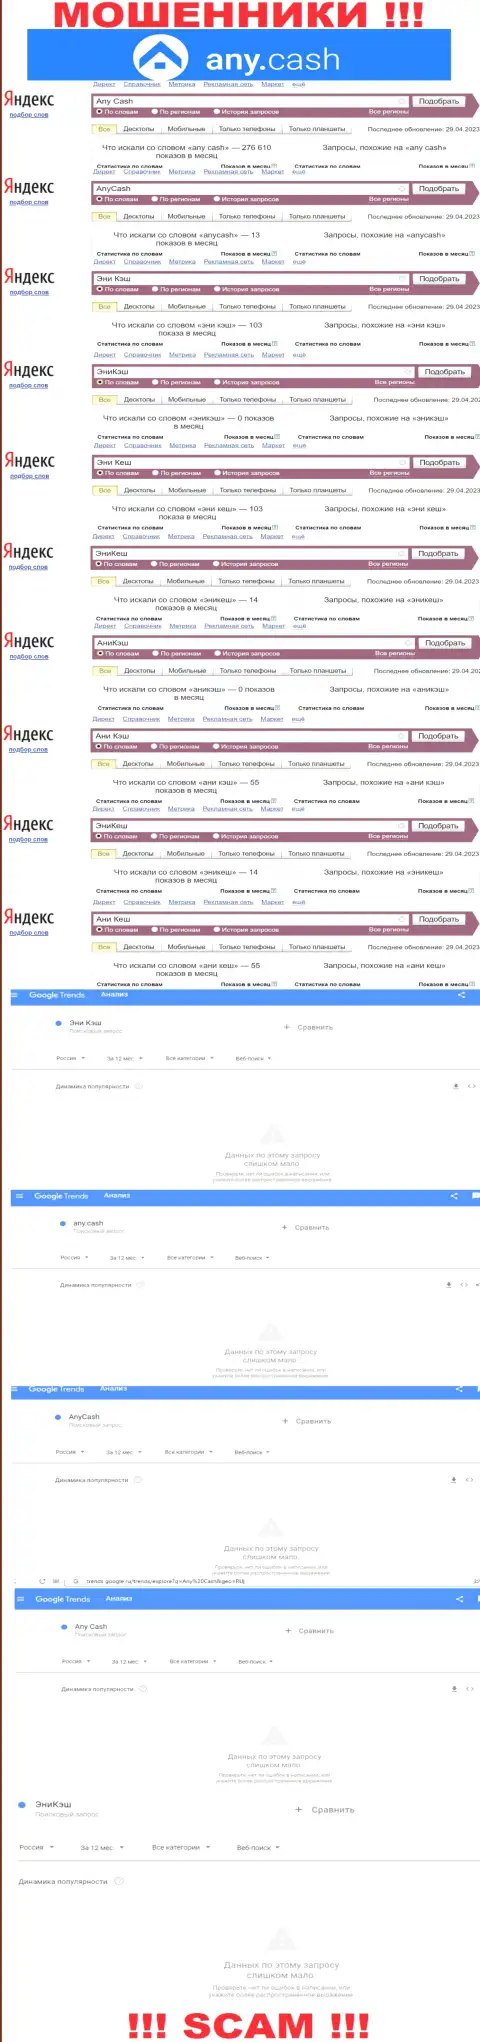 Скрин результатов поисковых запросов по неправомерно действующей организации Эни Кэш